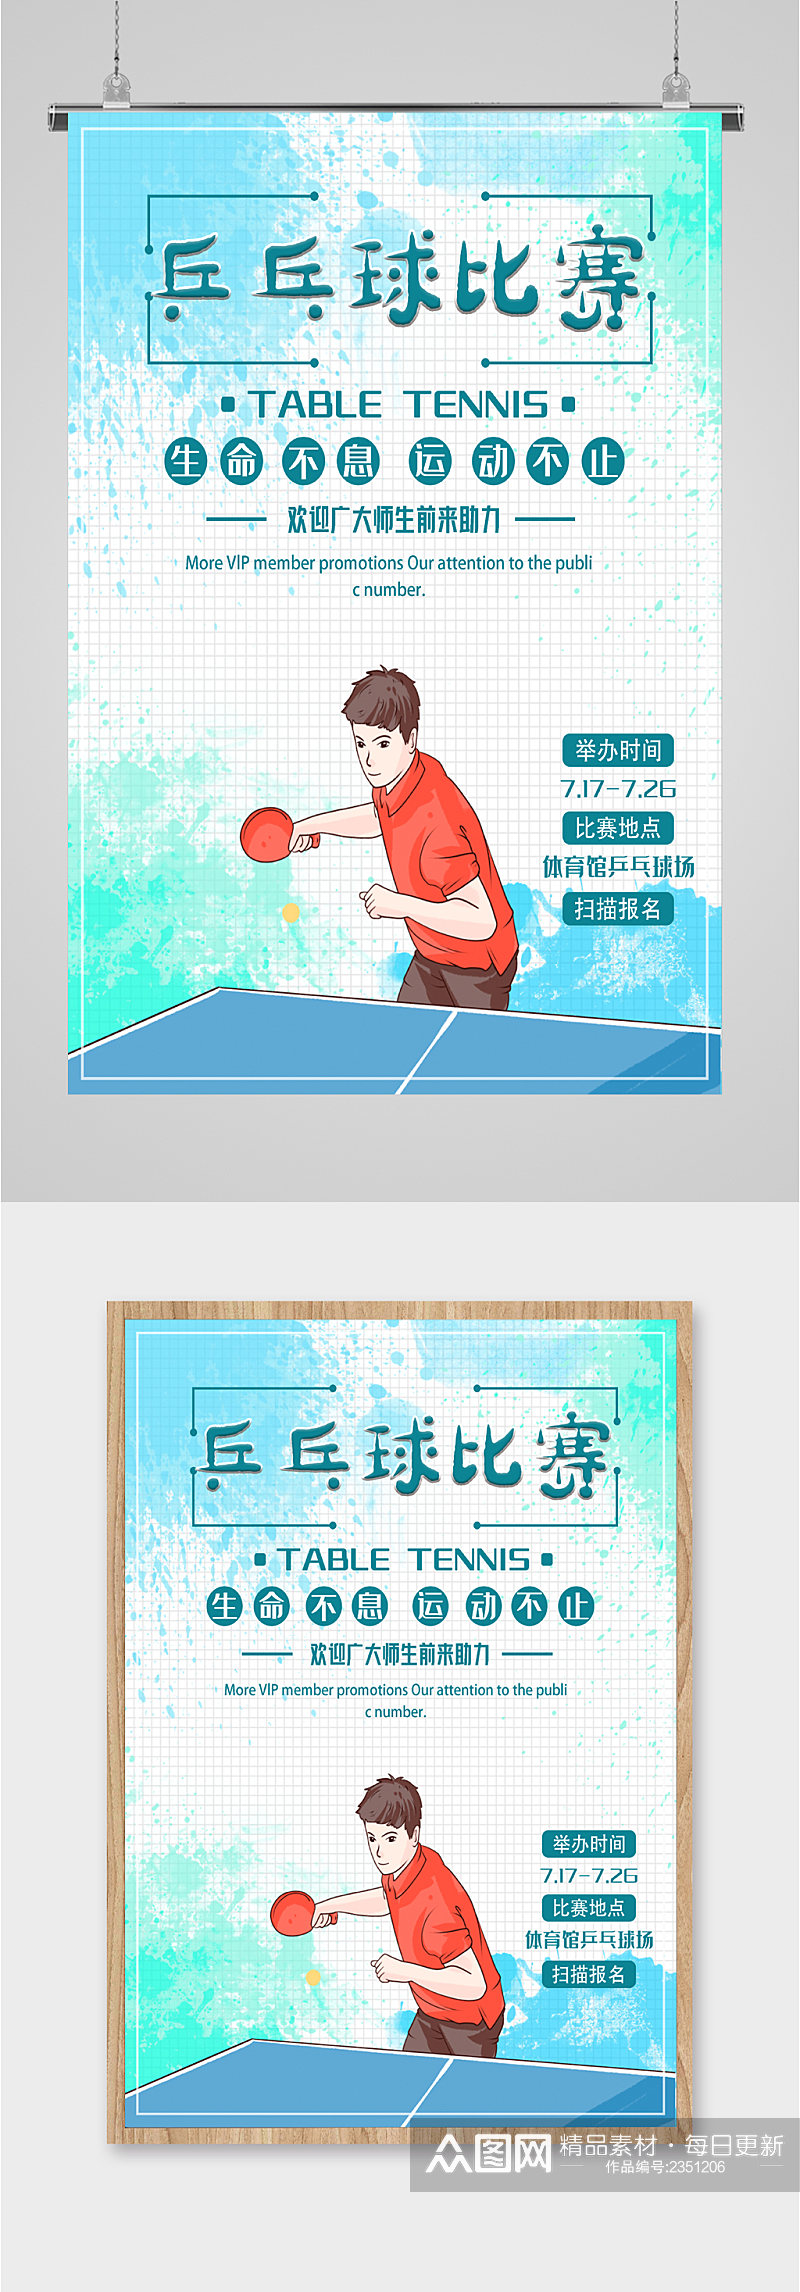 乒乓球比赛报名海报素材